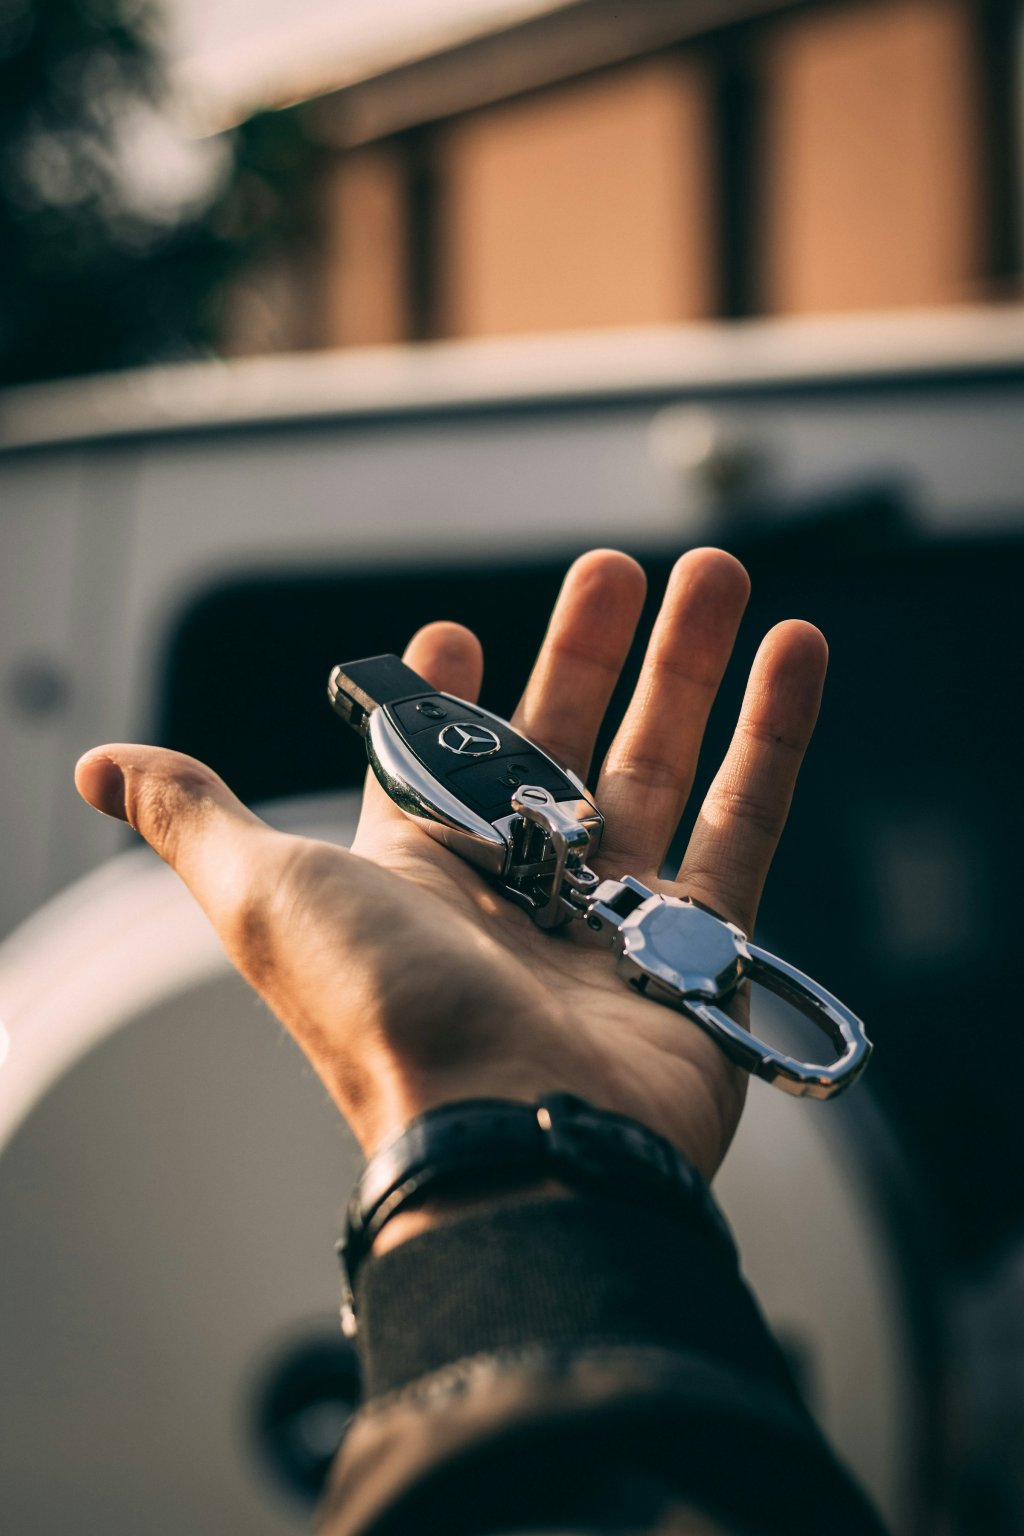 Vehicle keys and locks.